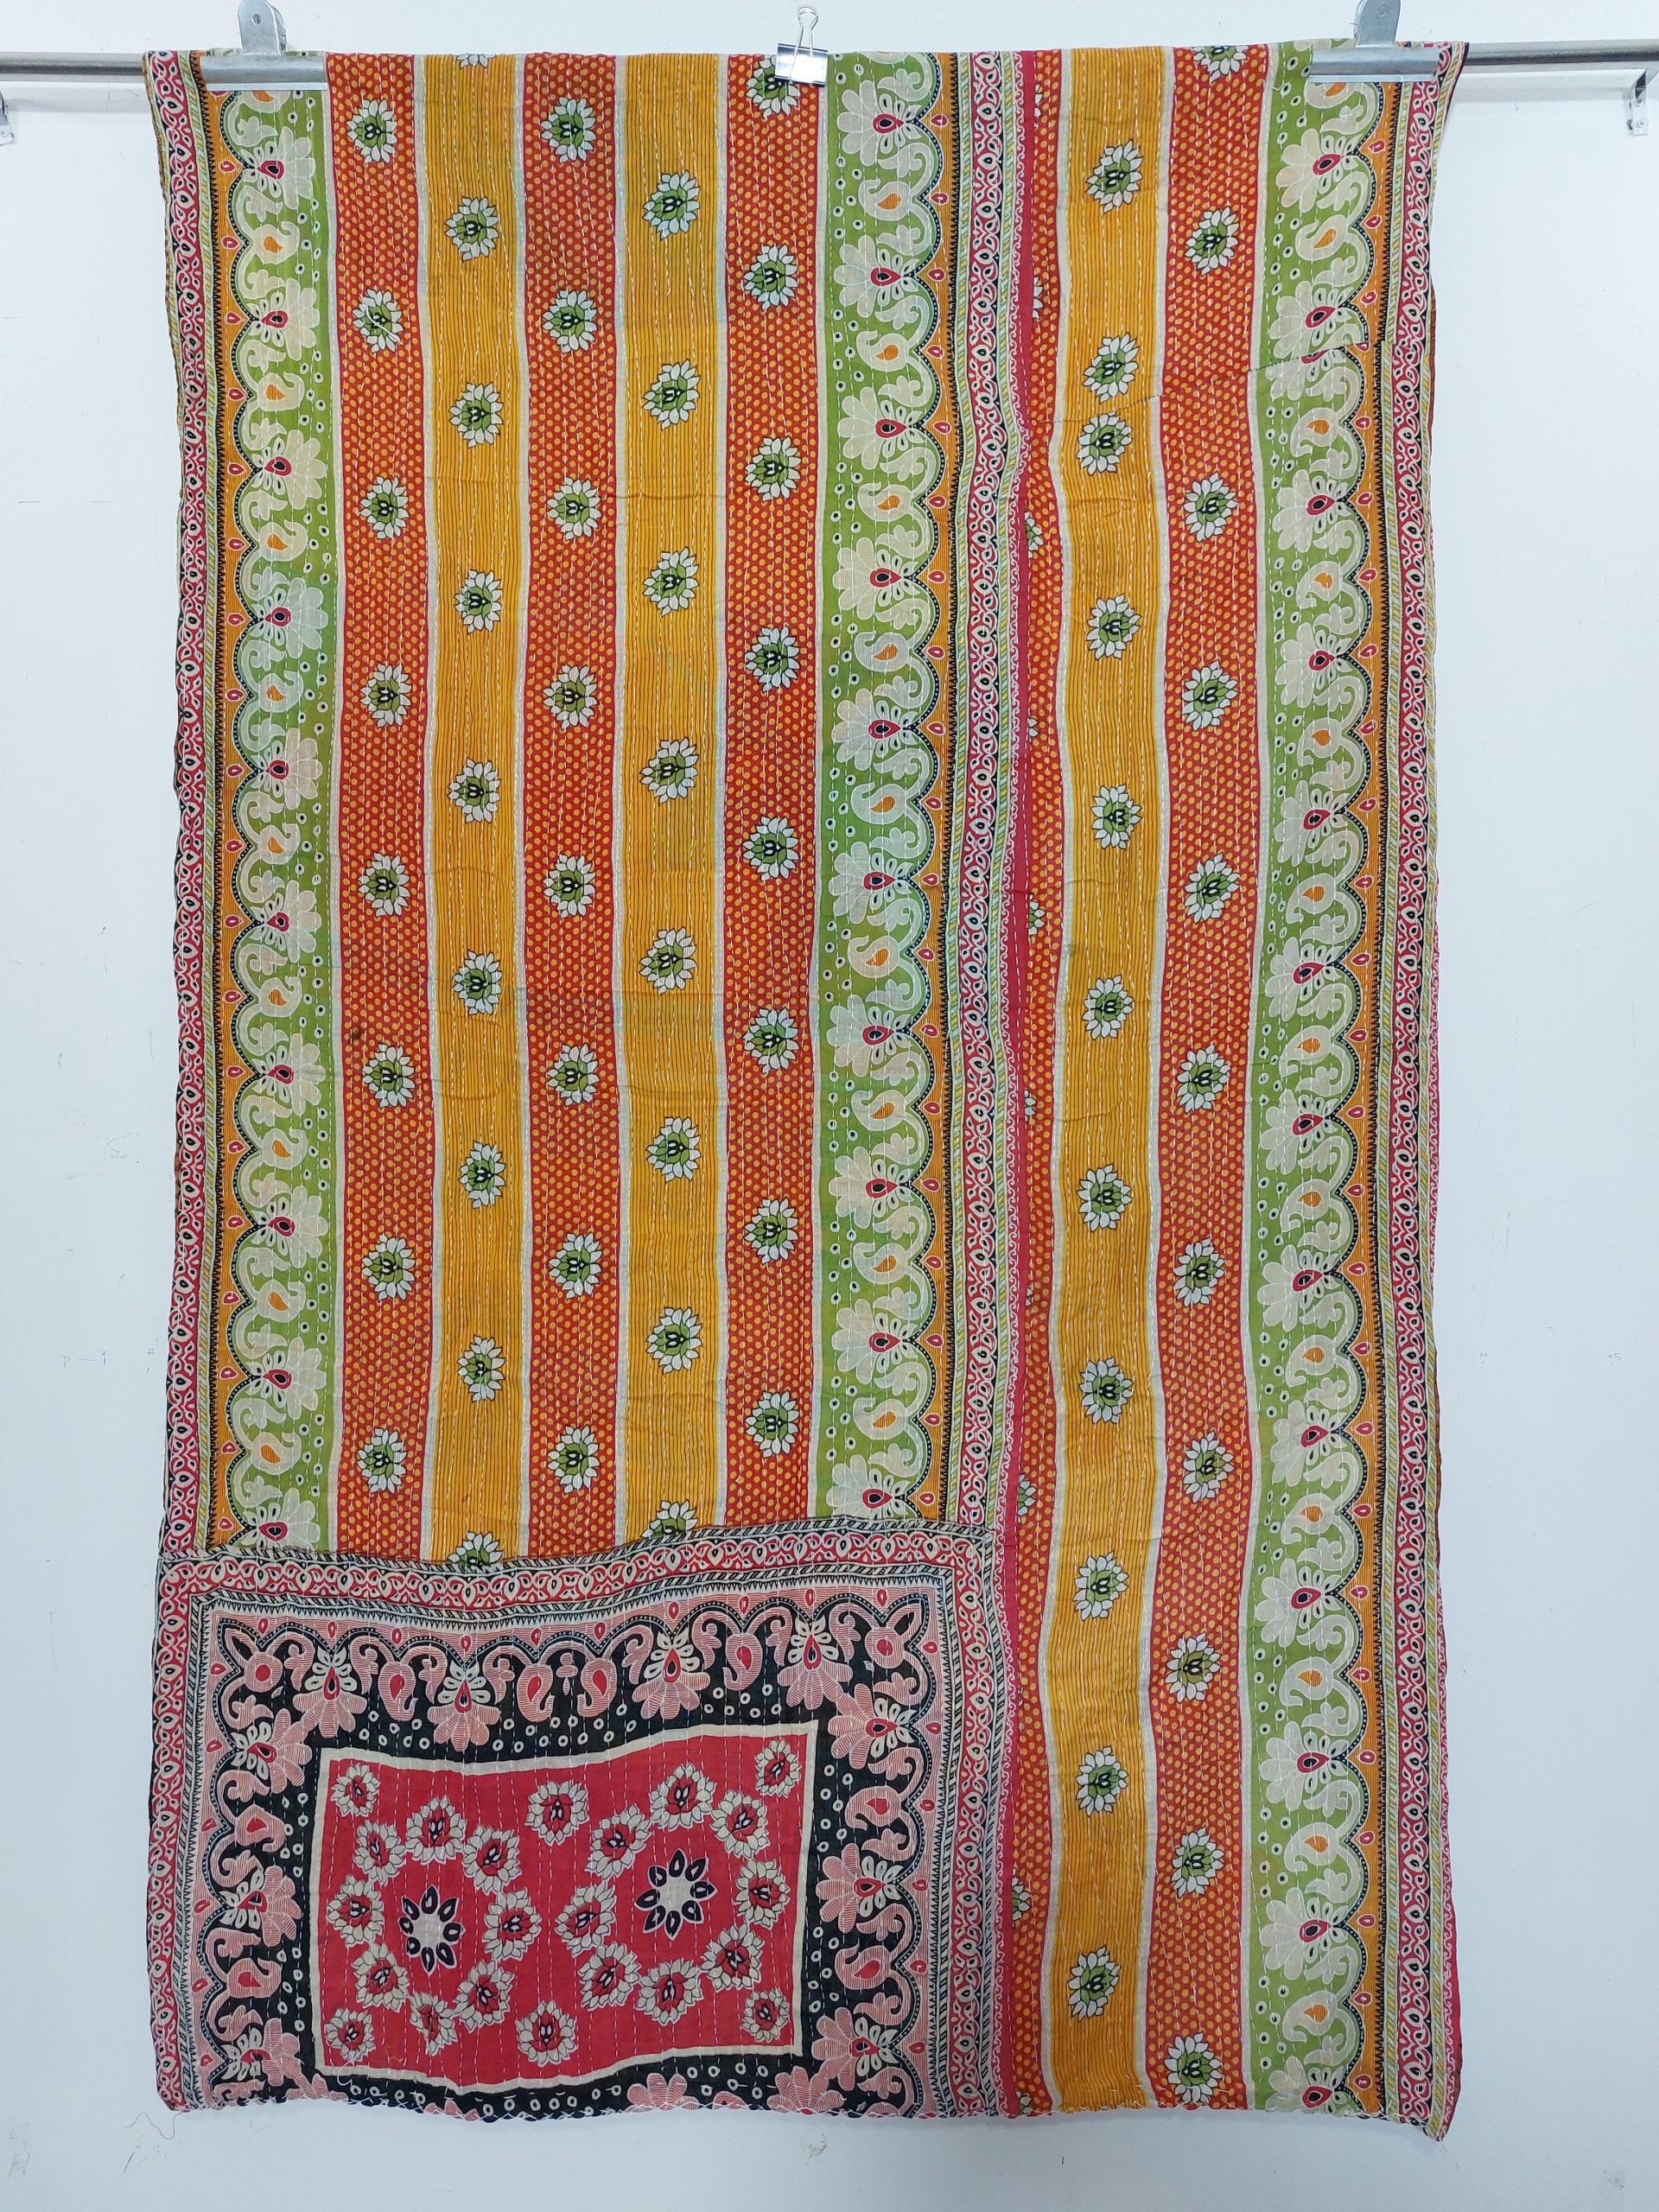 Polka Dot Recycled Sari Kantha Quilt - Vintage Kantha Quilts, Throw ...